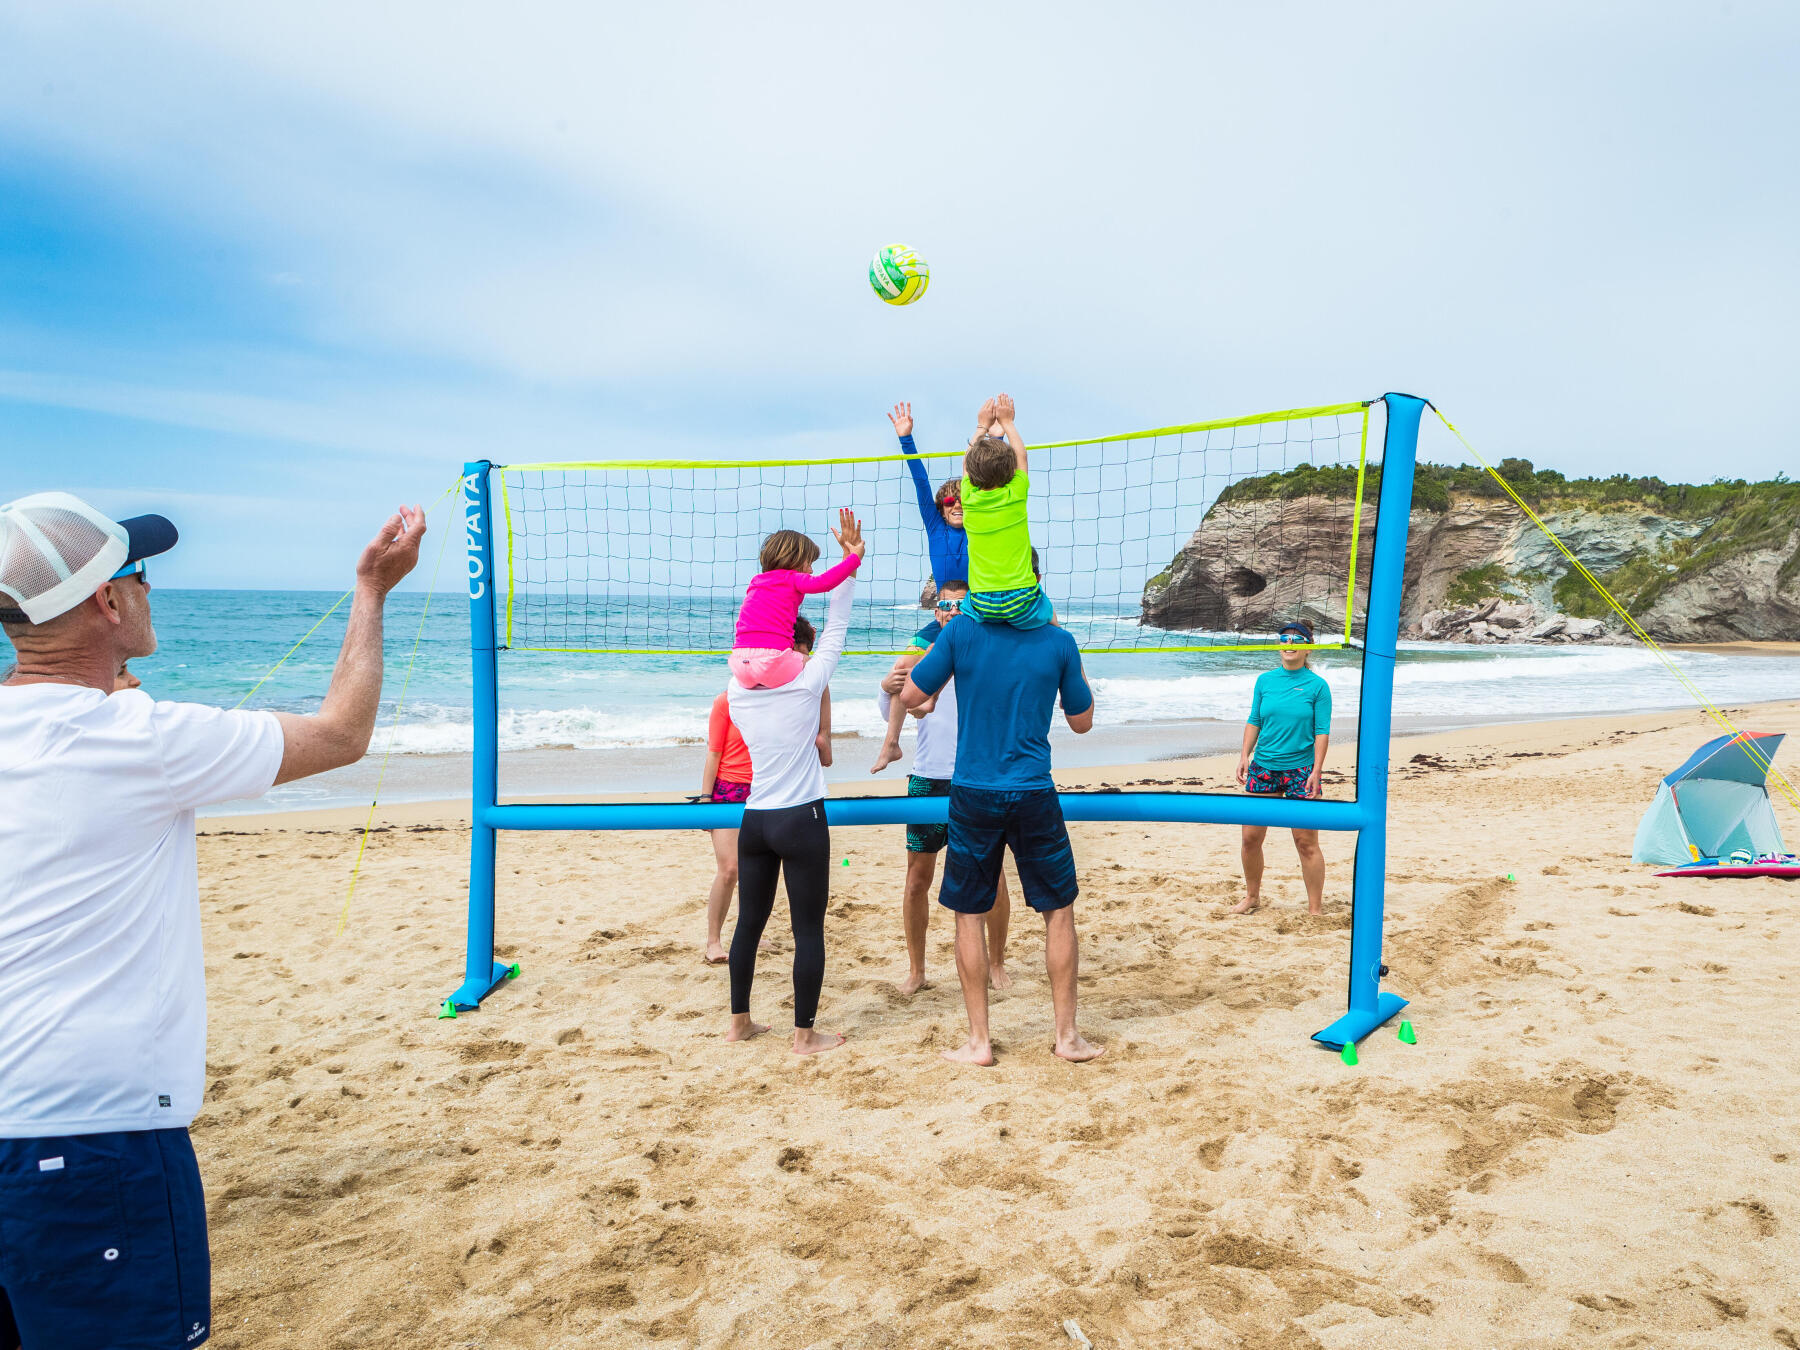 Quelles sont les règles du beach-volley?